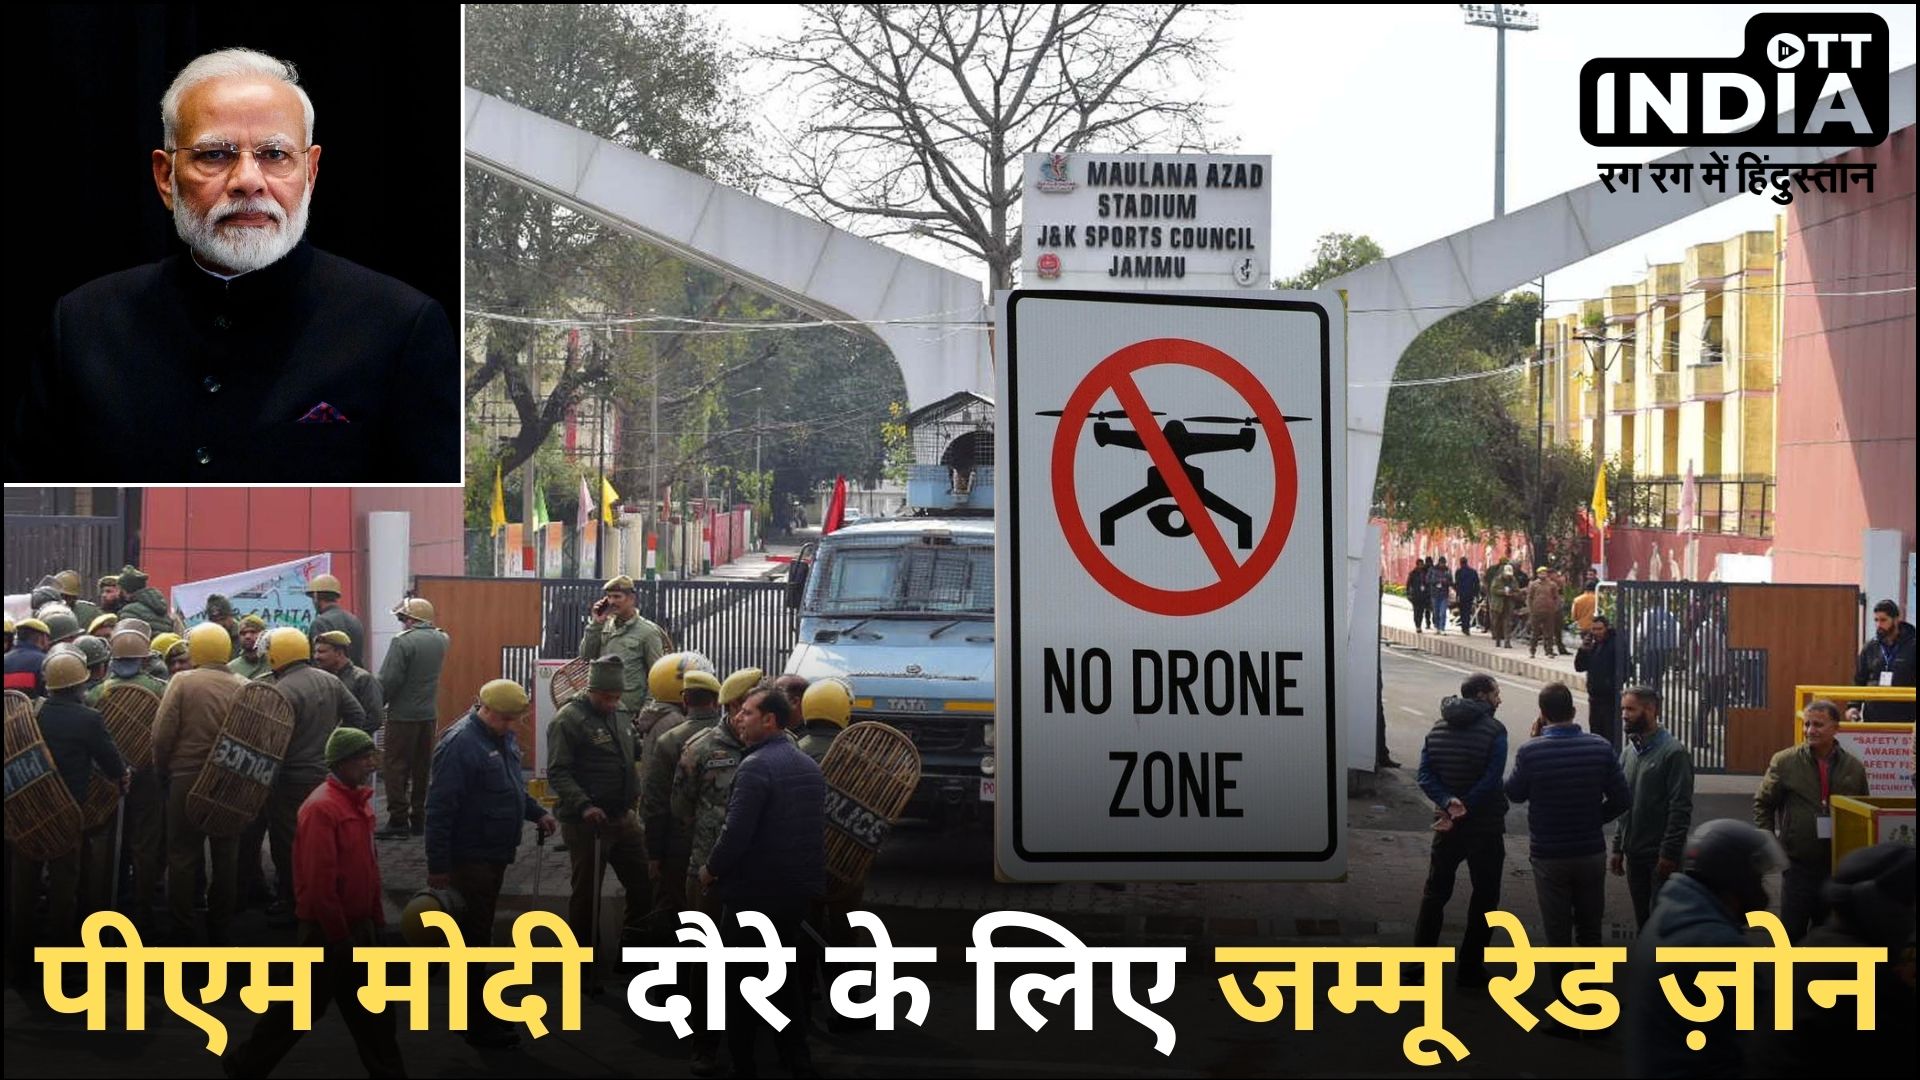 Modi in Jammu: पीएम मोदी के दौरे को देखते हुए जम्मू में ‘नो ड्रोन जोन’ घोषित, जनता के लिए एडवाइजरी जारी…